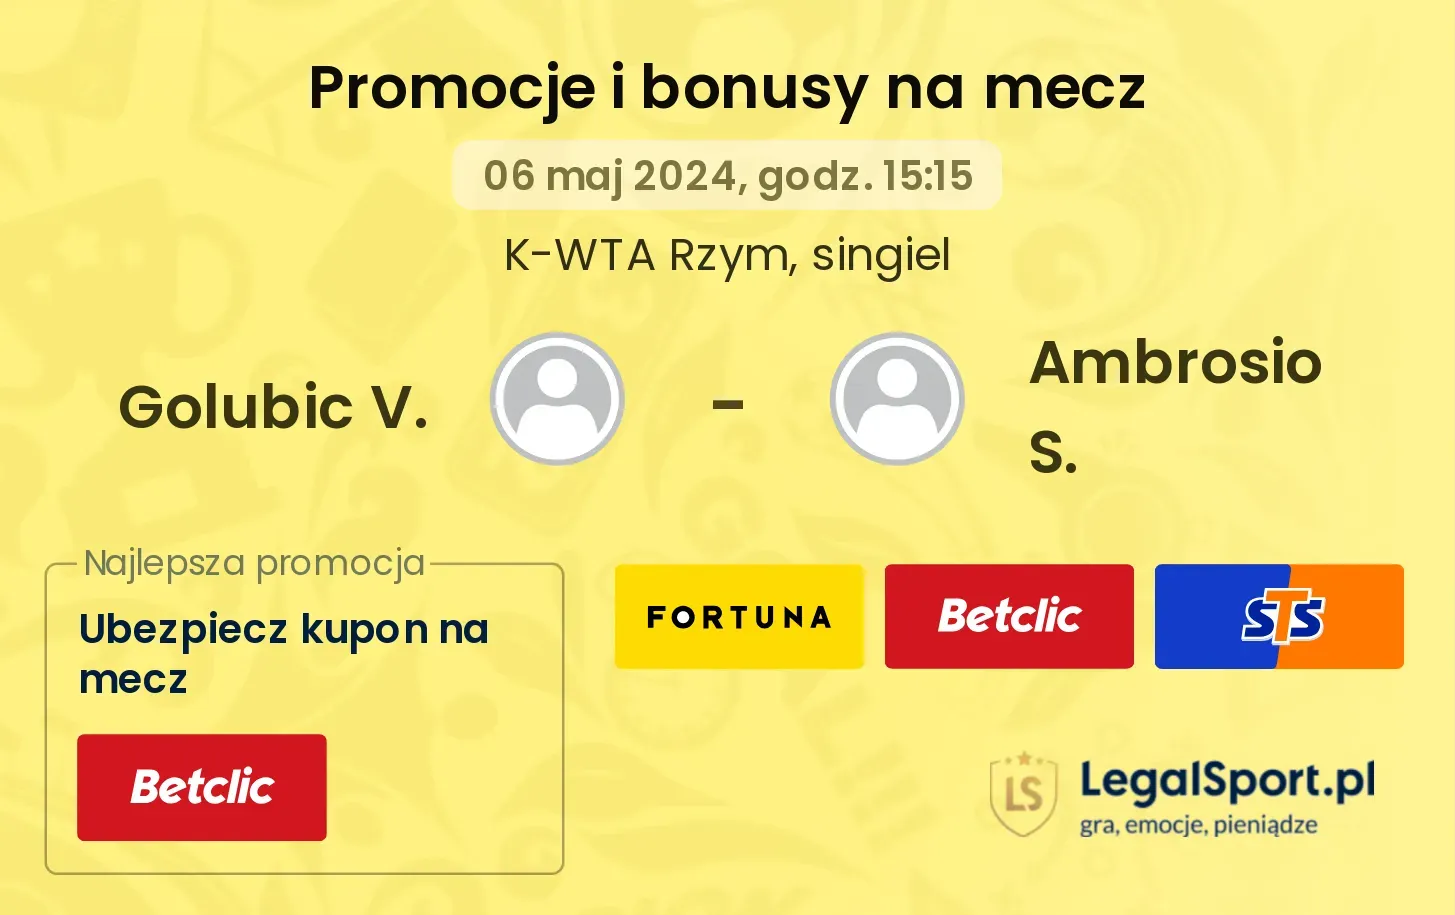 Golubic V. - Ambrosio S. promocje bonusy na mecz